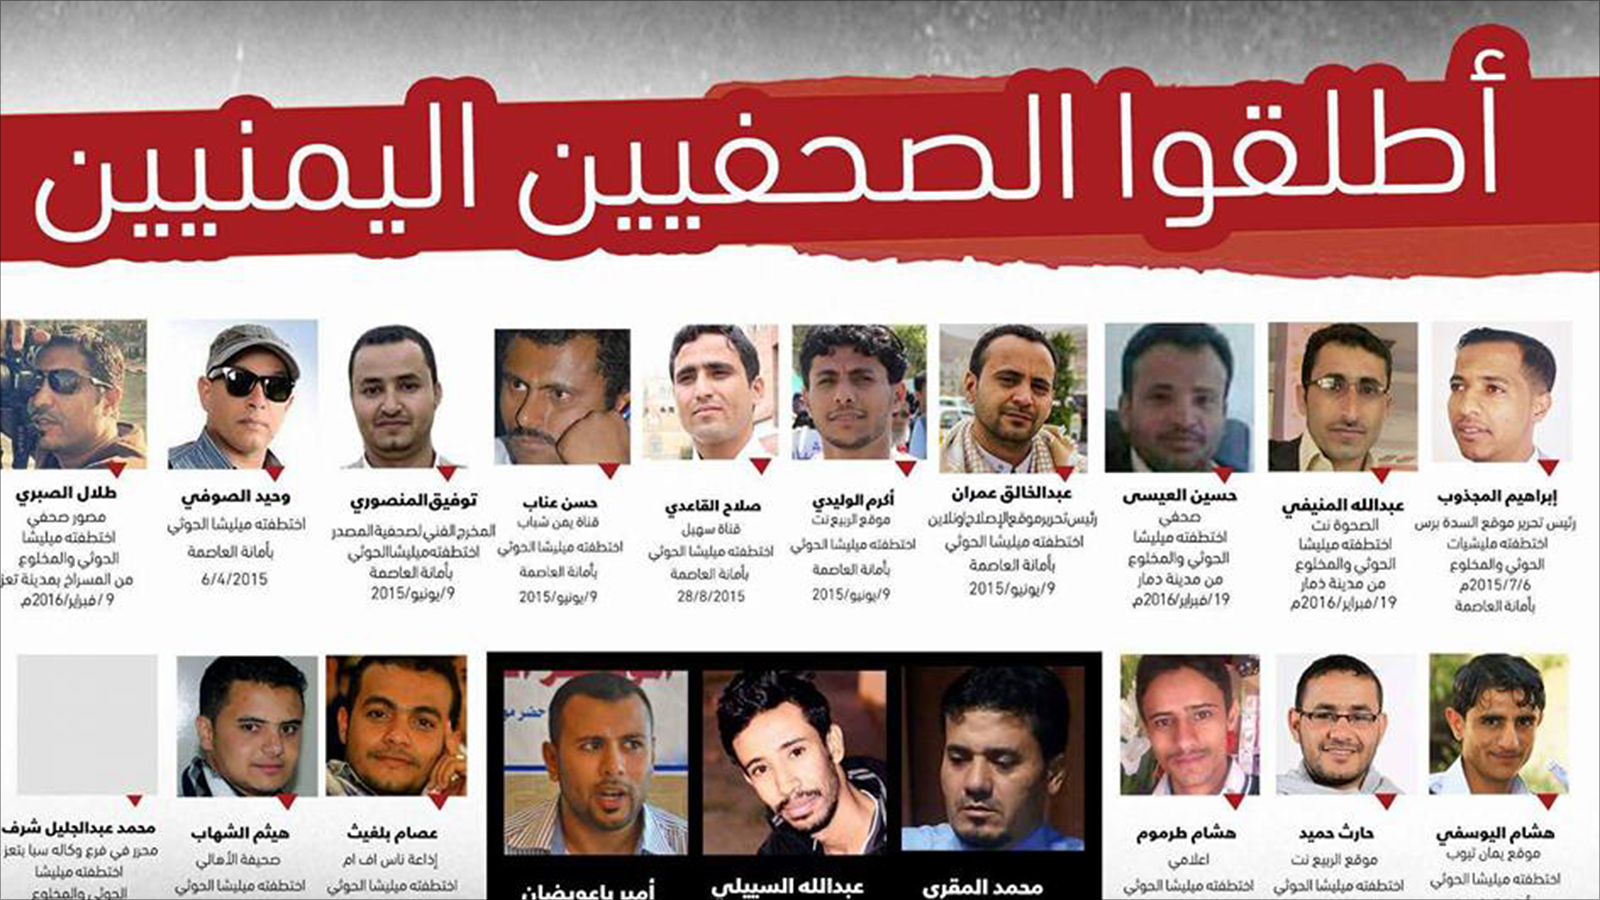 ‪منشور للصحفيين اليمنيين المعتقلين والمخفيين في اليمن نشره نشطاء على مواقع التواصل الاجتماعي‬ (نشطاء)